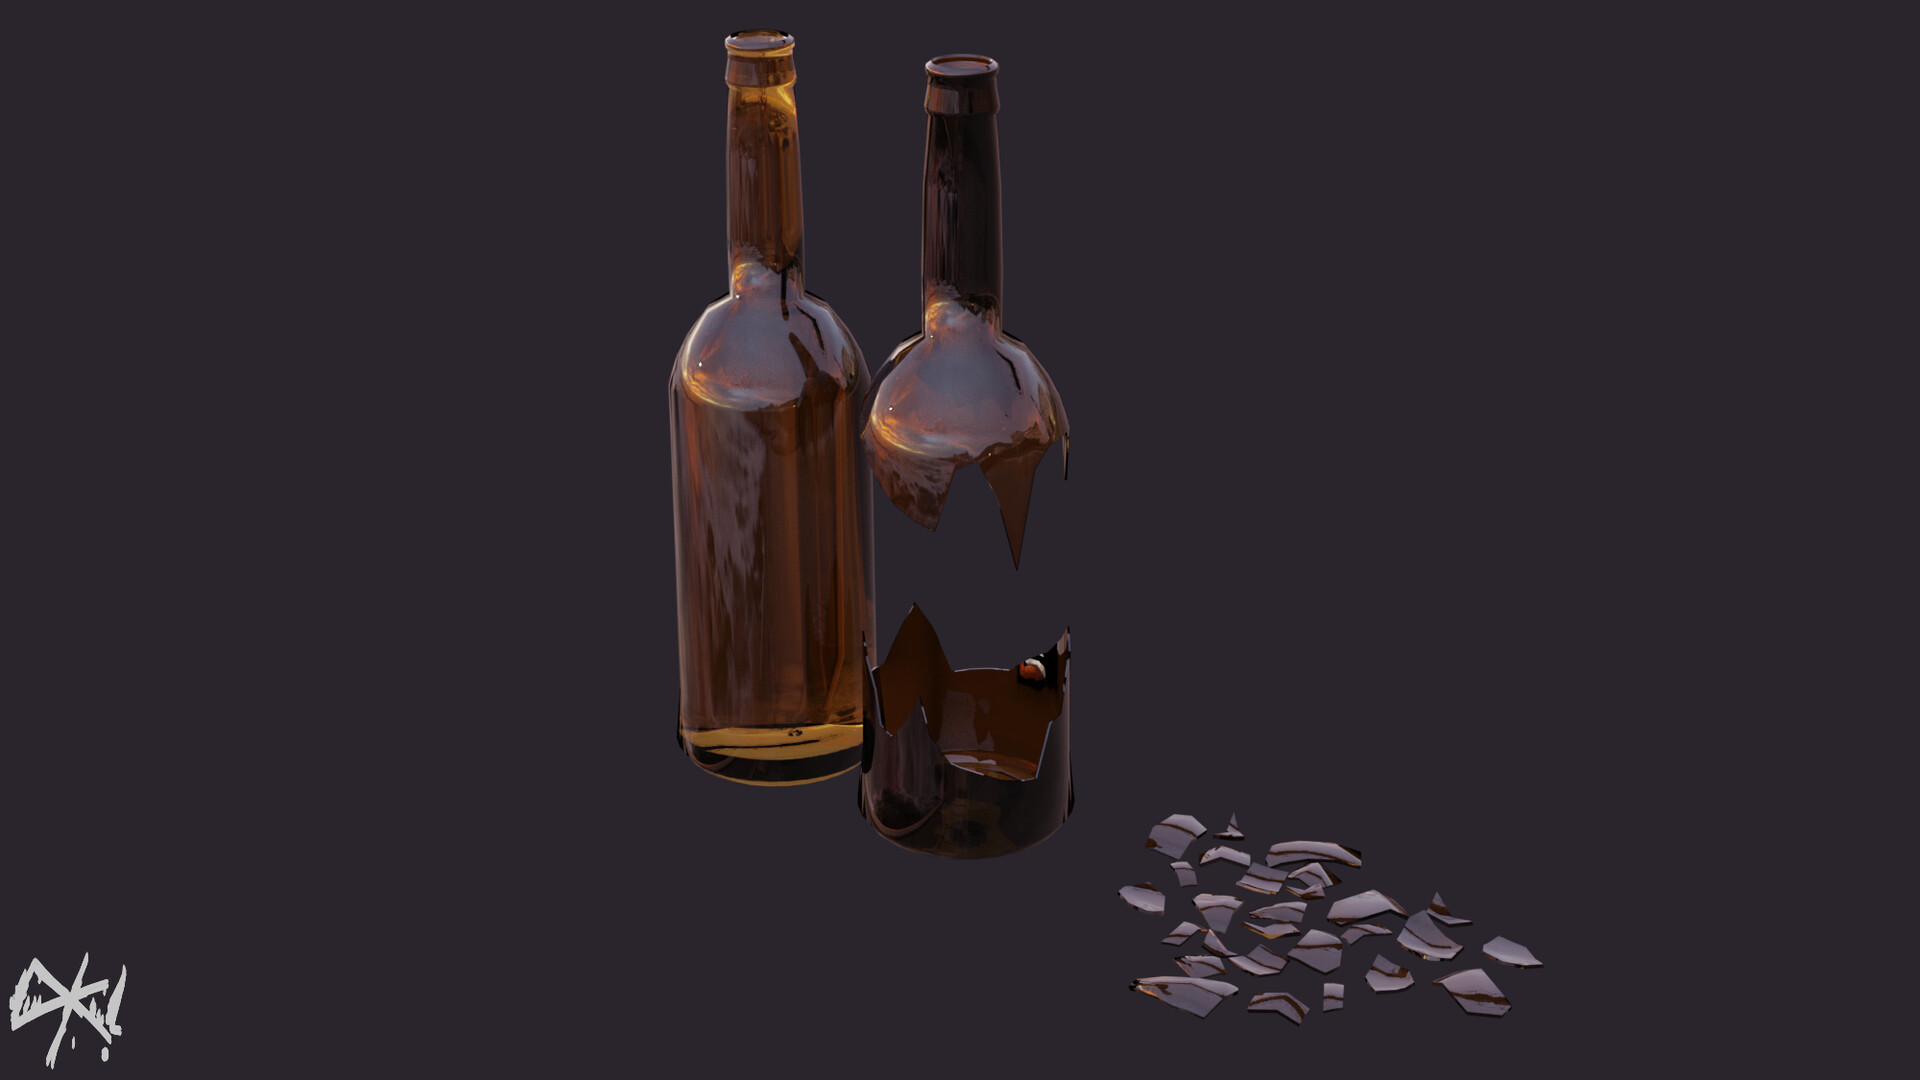 ArtStation - Blender Bottle / Perfect Glass Shader